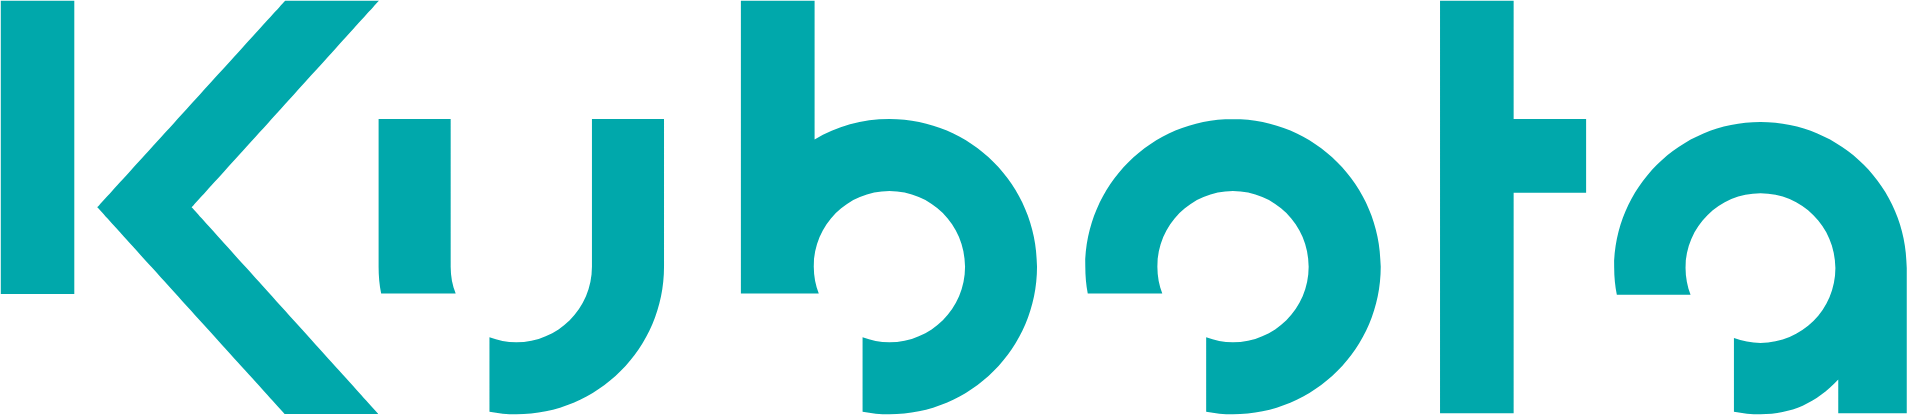 Kubota Logo In Transparent Png Format